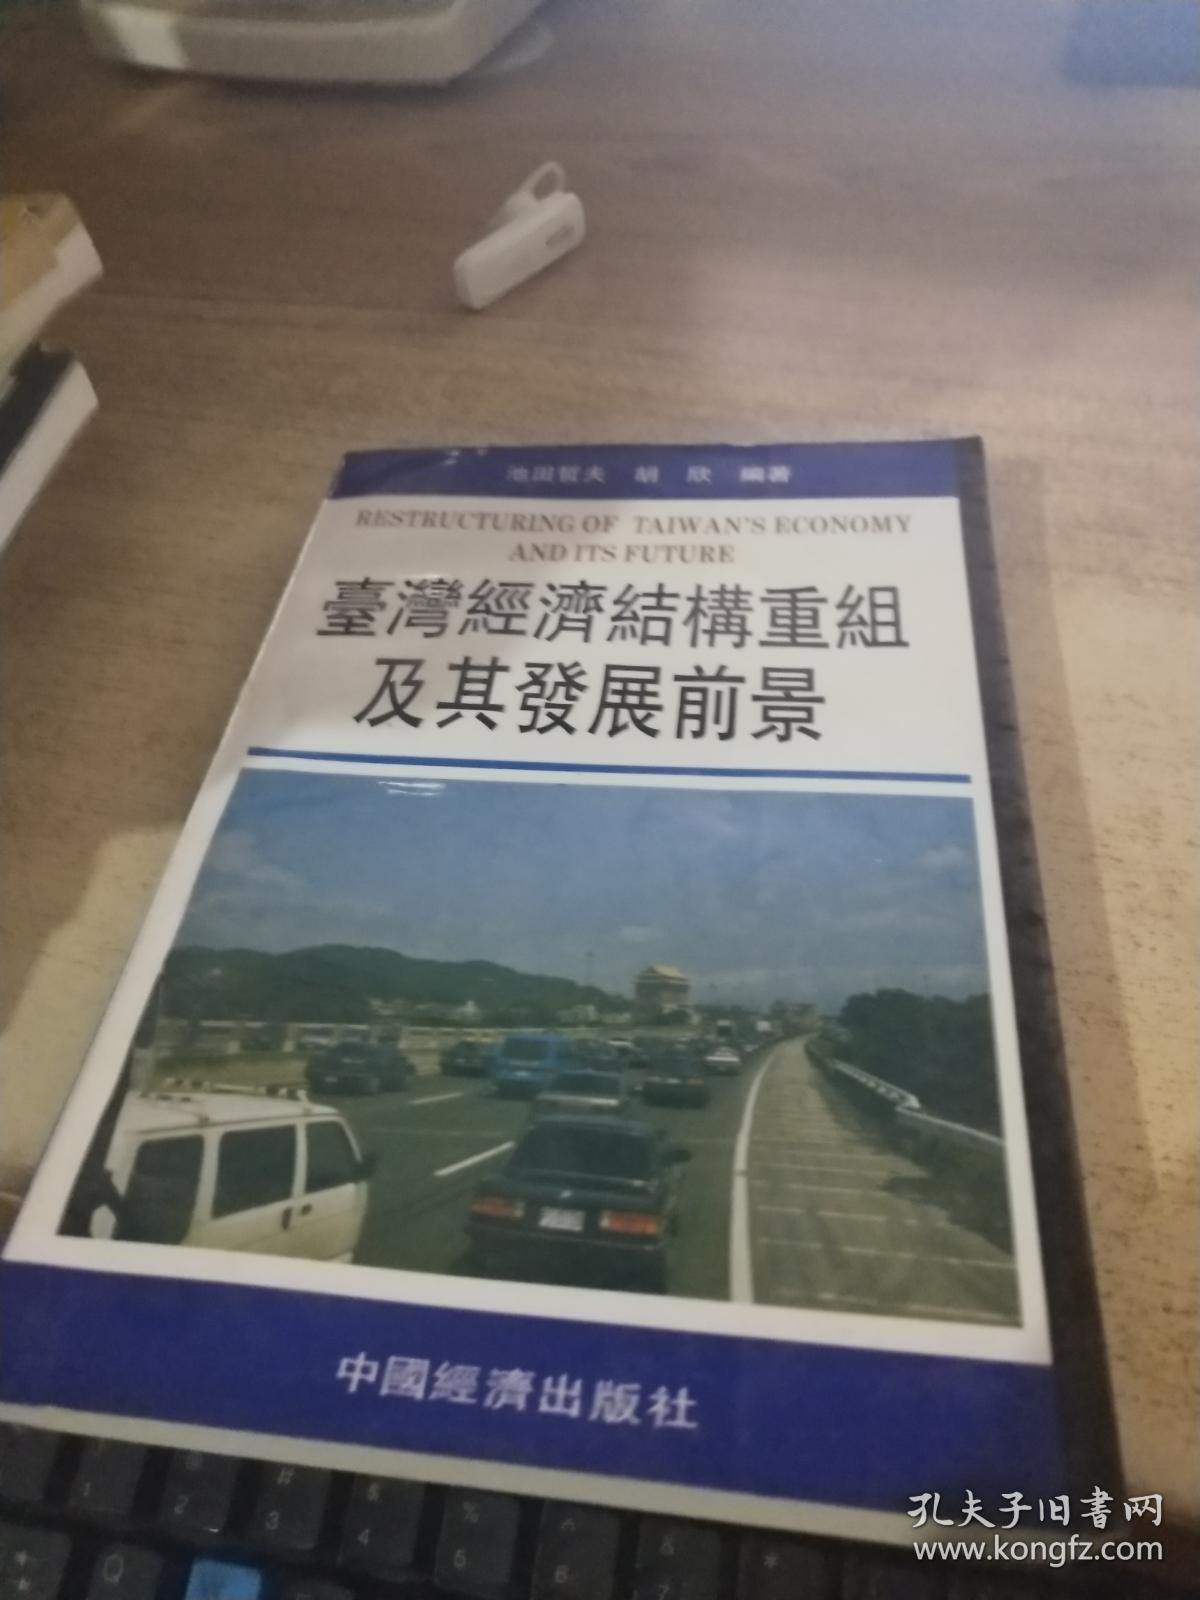 台湾经济结构重组及其发展前景(农行馆藏)